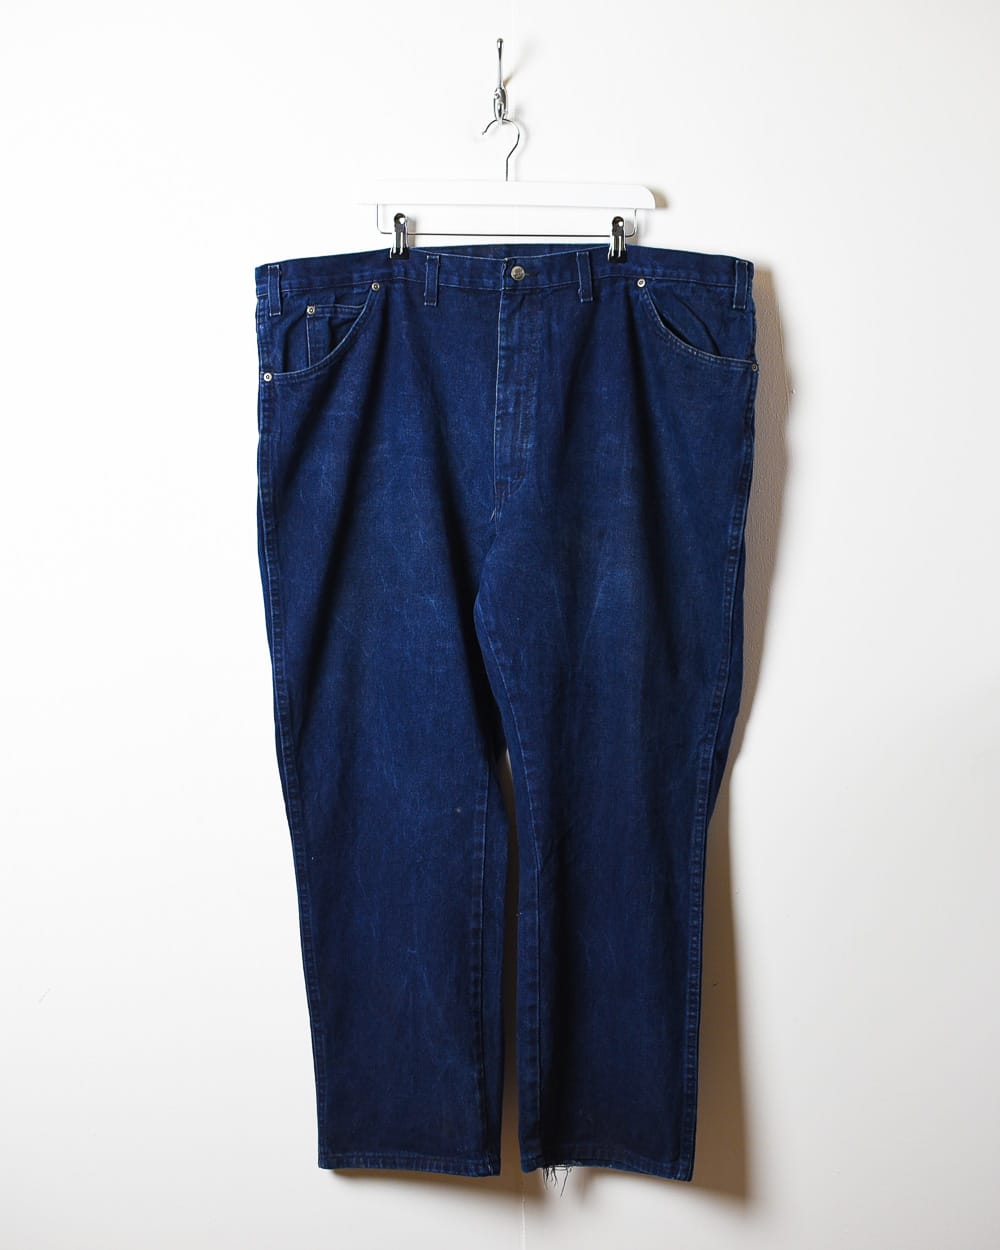 Navy Dickies Jeans - W48 L30